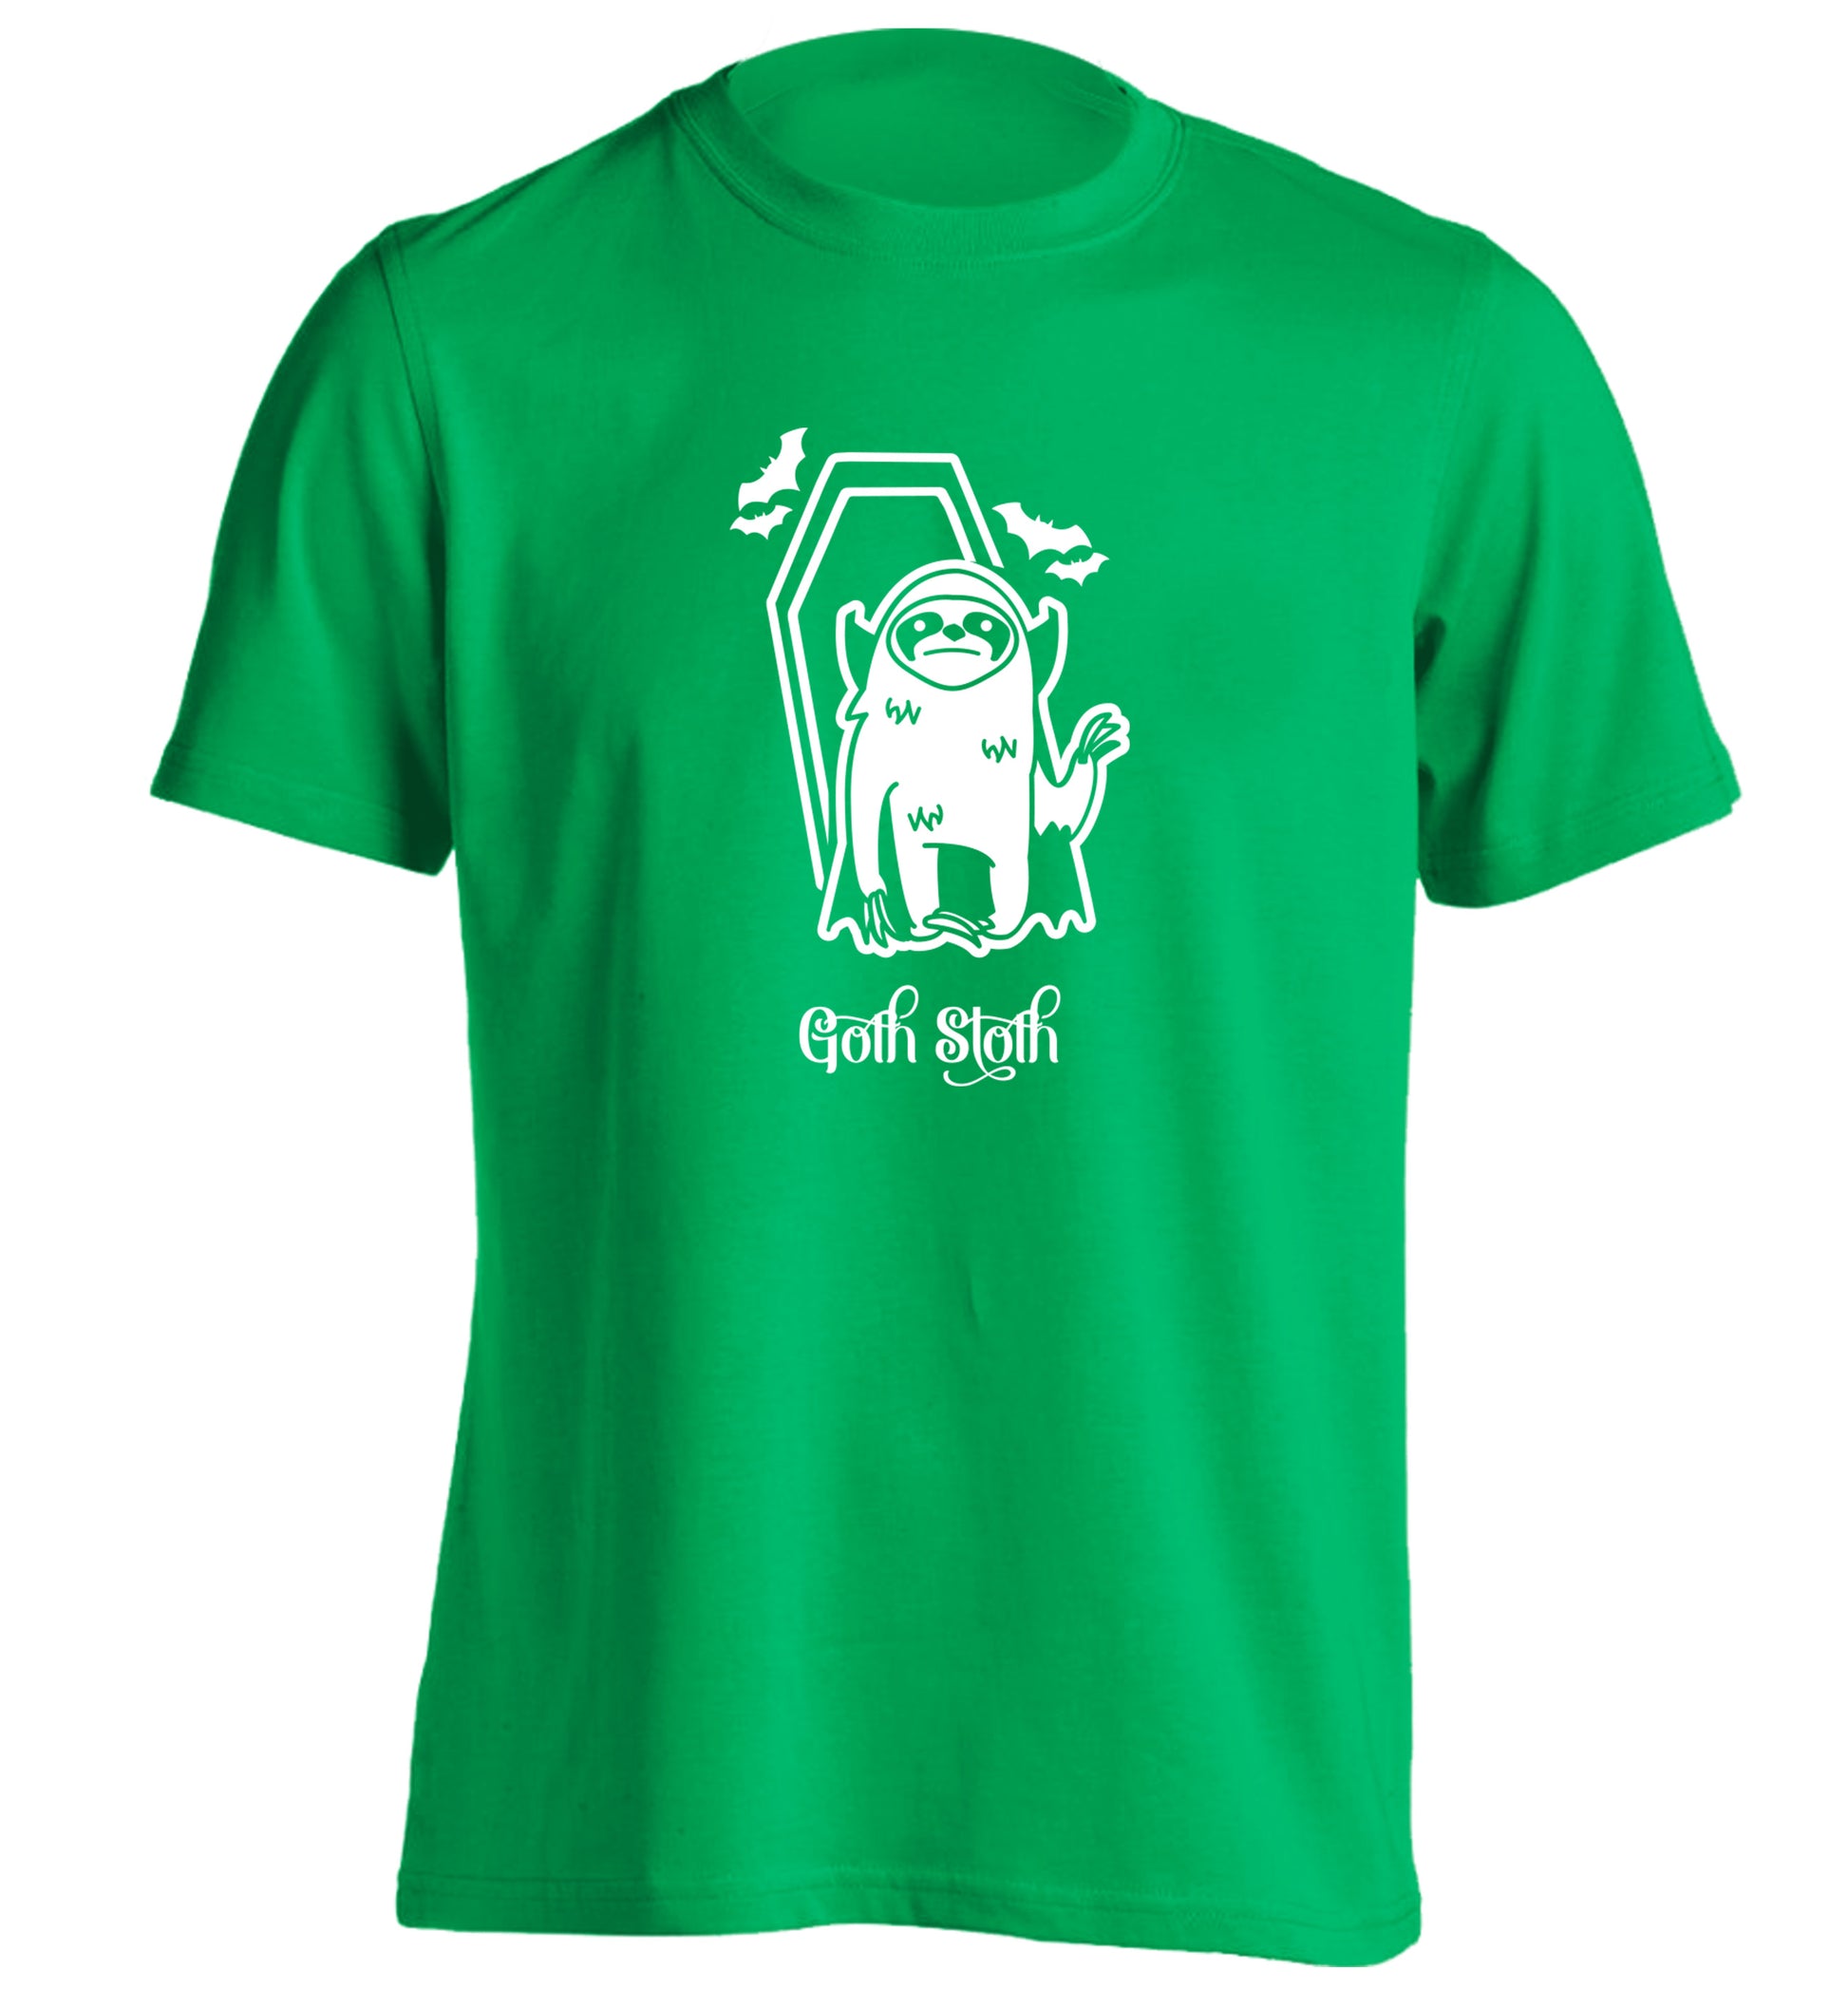 Goth Sloth adults unisex green Tshirt 2XL